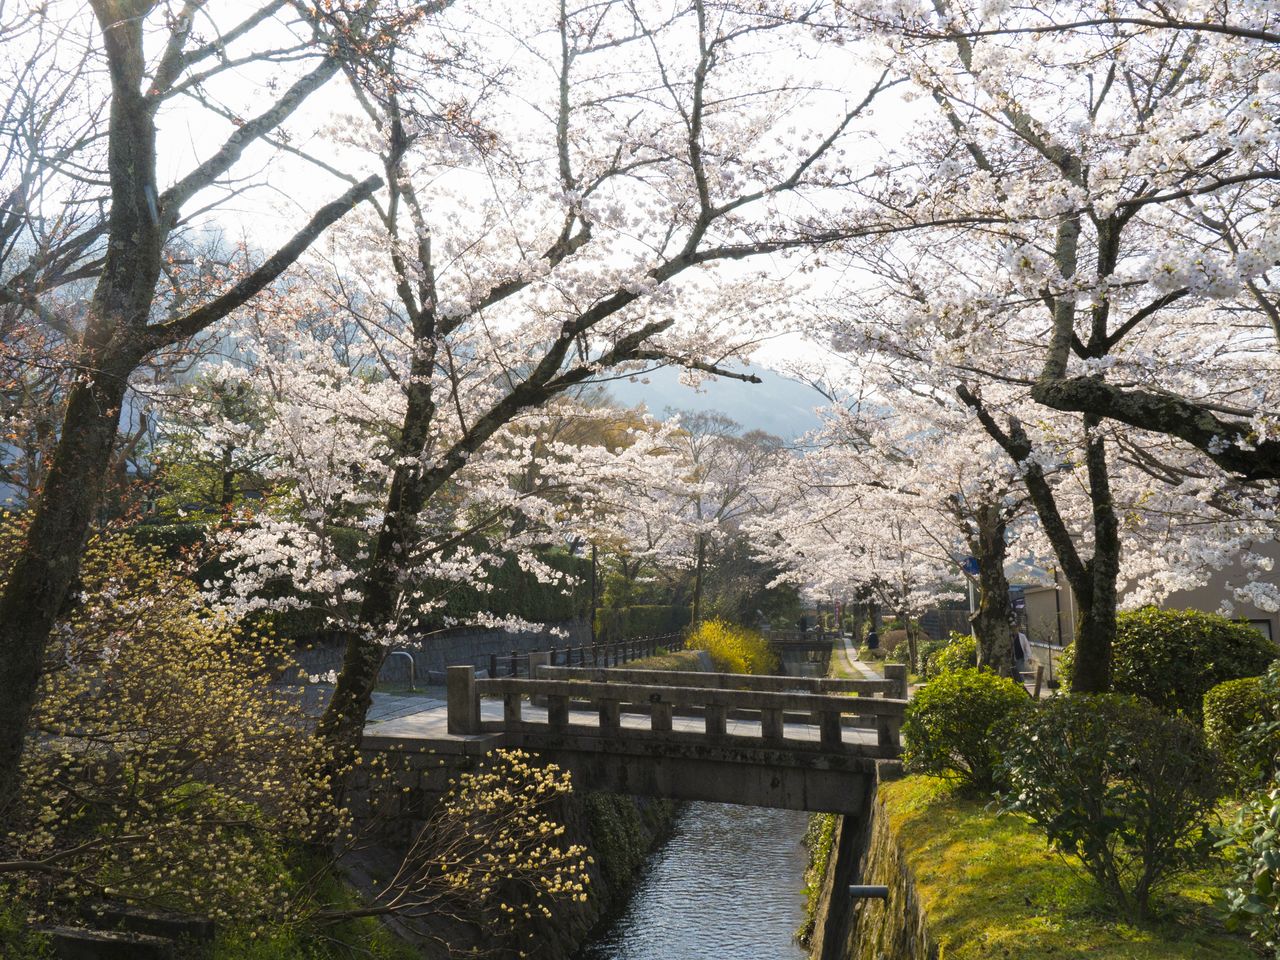 Des ponts enjambent de temps à autre le canal, conférant un agréable accent à la vue des splendides cerisiers.